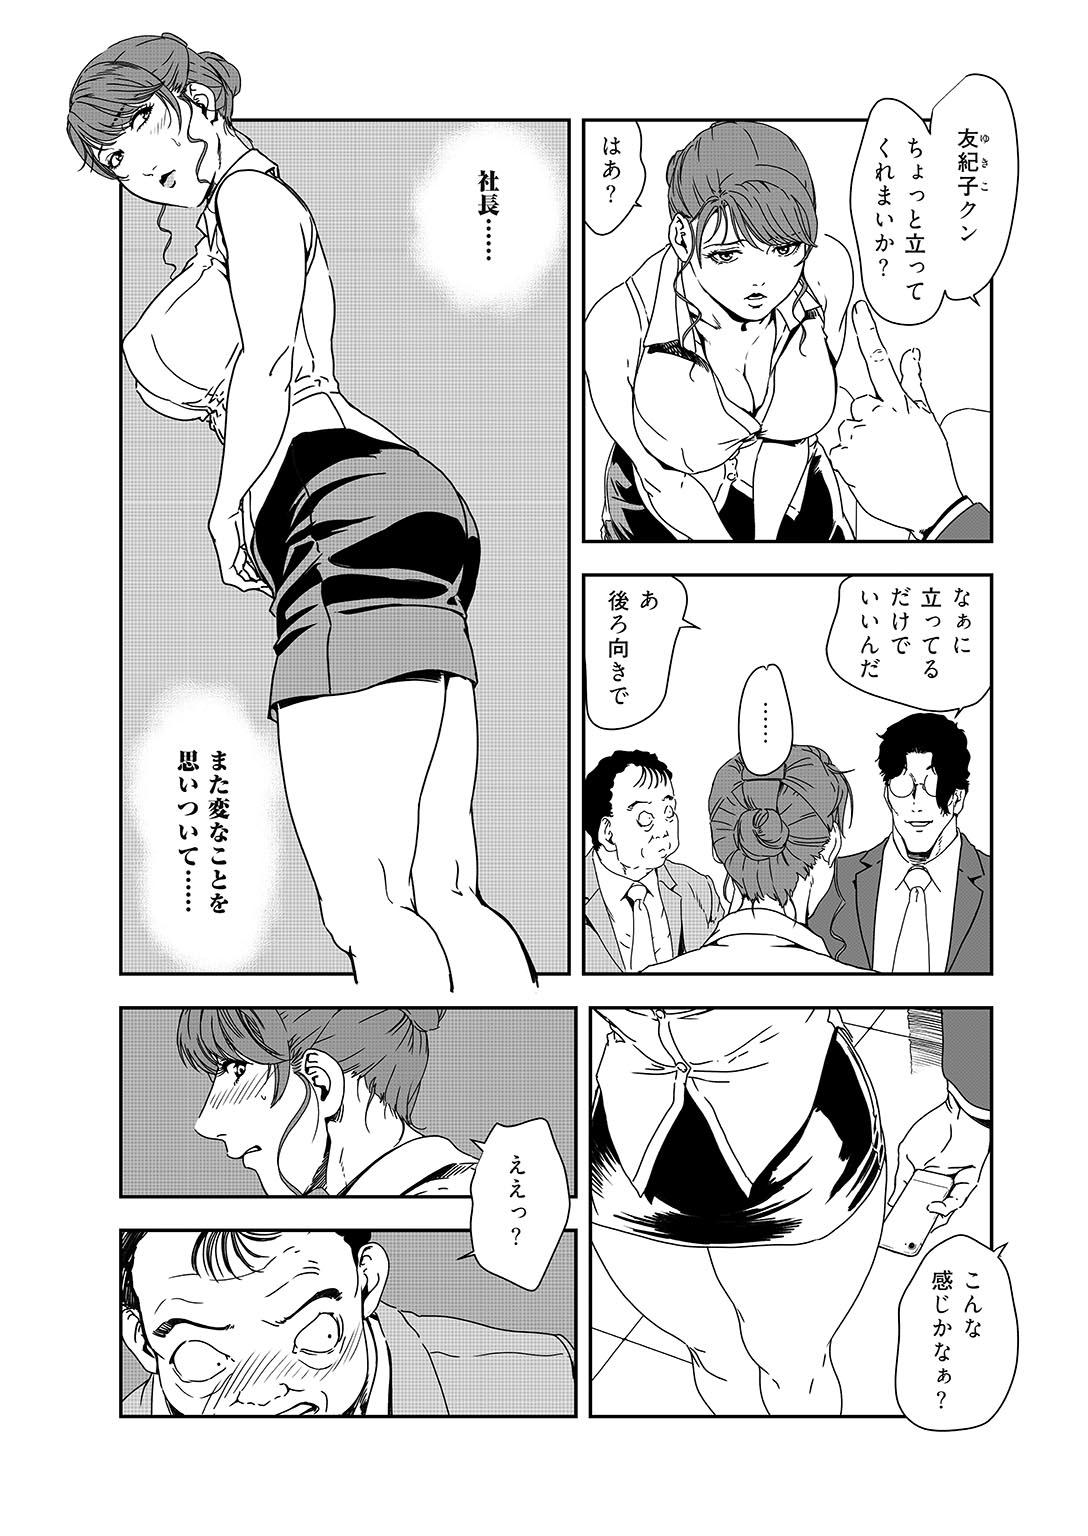 Highschool Nikuhisyo Yukiko 38 Funny - Page 8